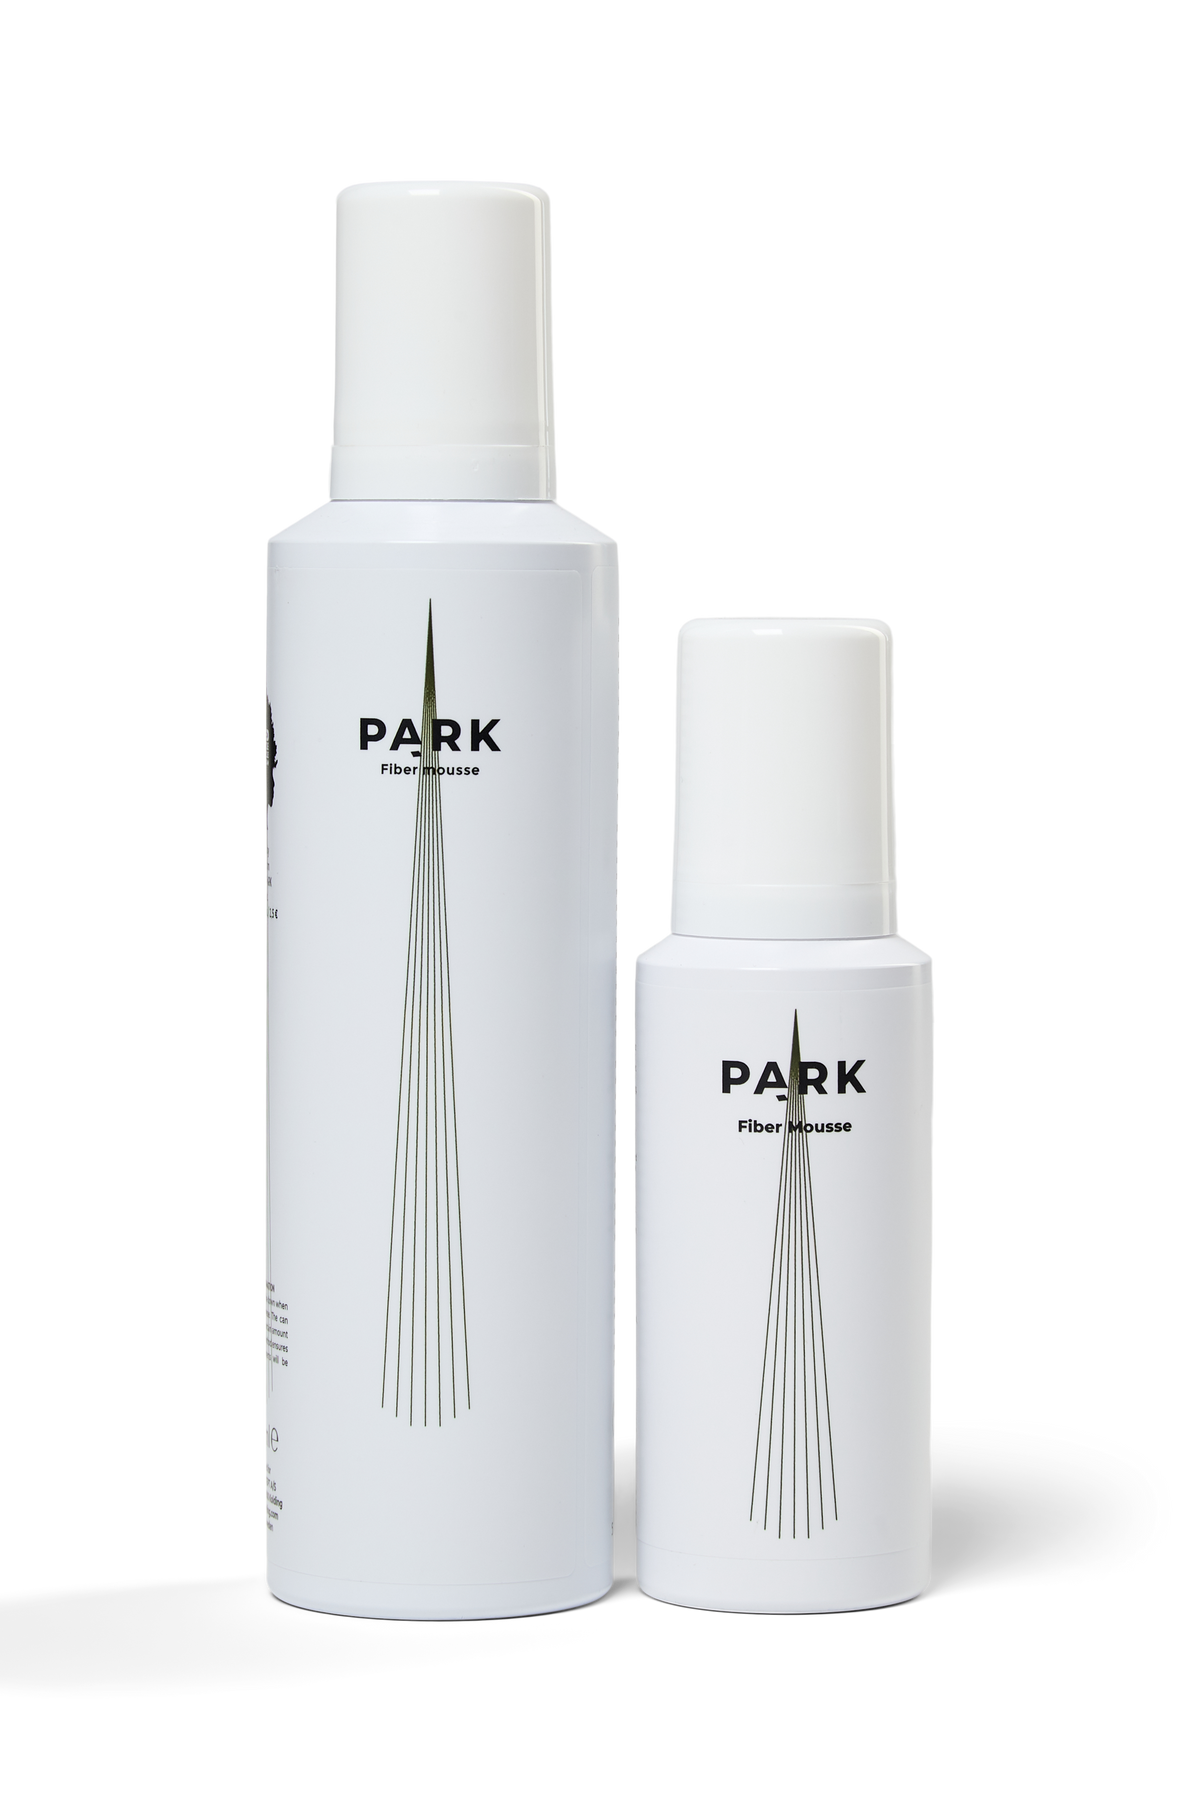 Fiber mousse - Ekstra fylde og volumen med PARKs hårmousse (Rejsestørrelse)